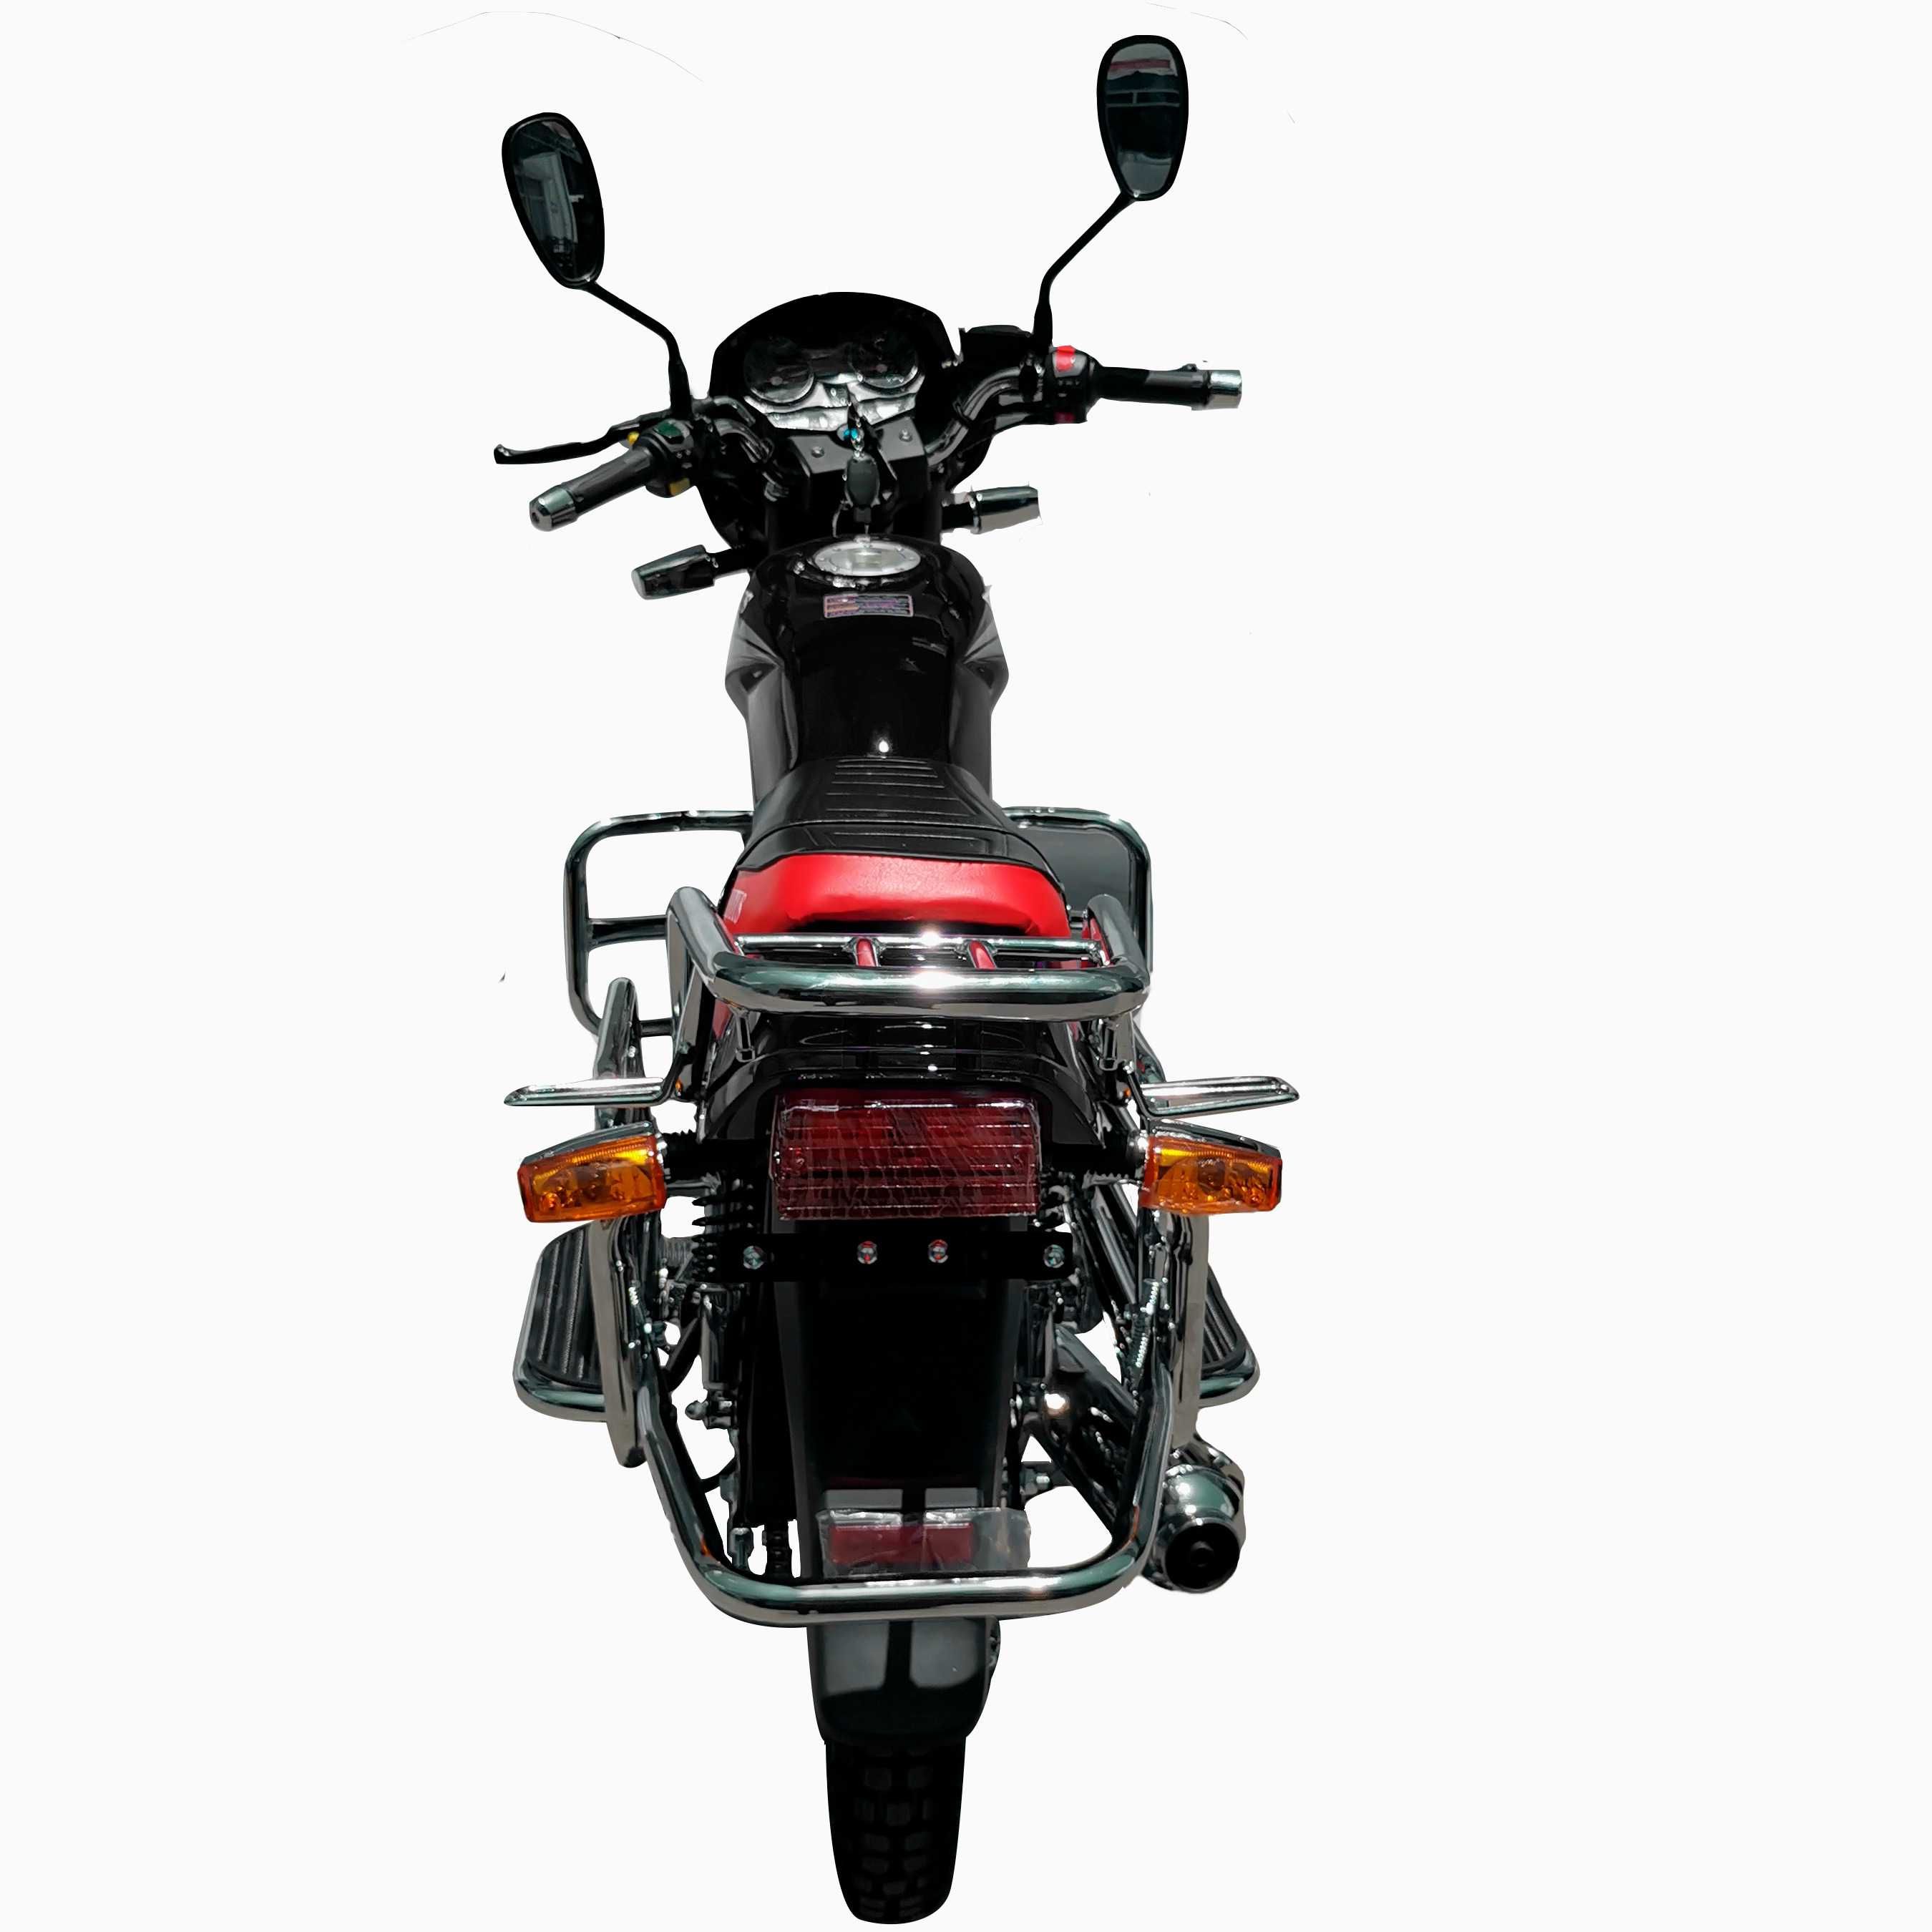 Новый мотоцикл VENTUS 200 см3. Самая низкая цена